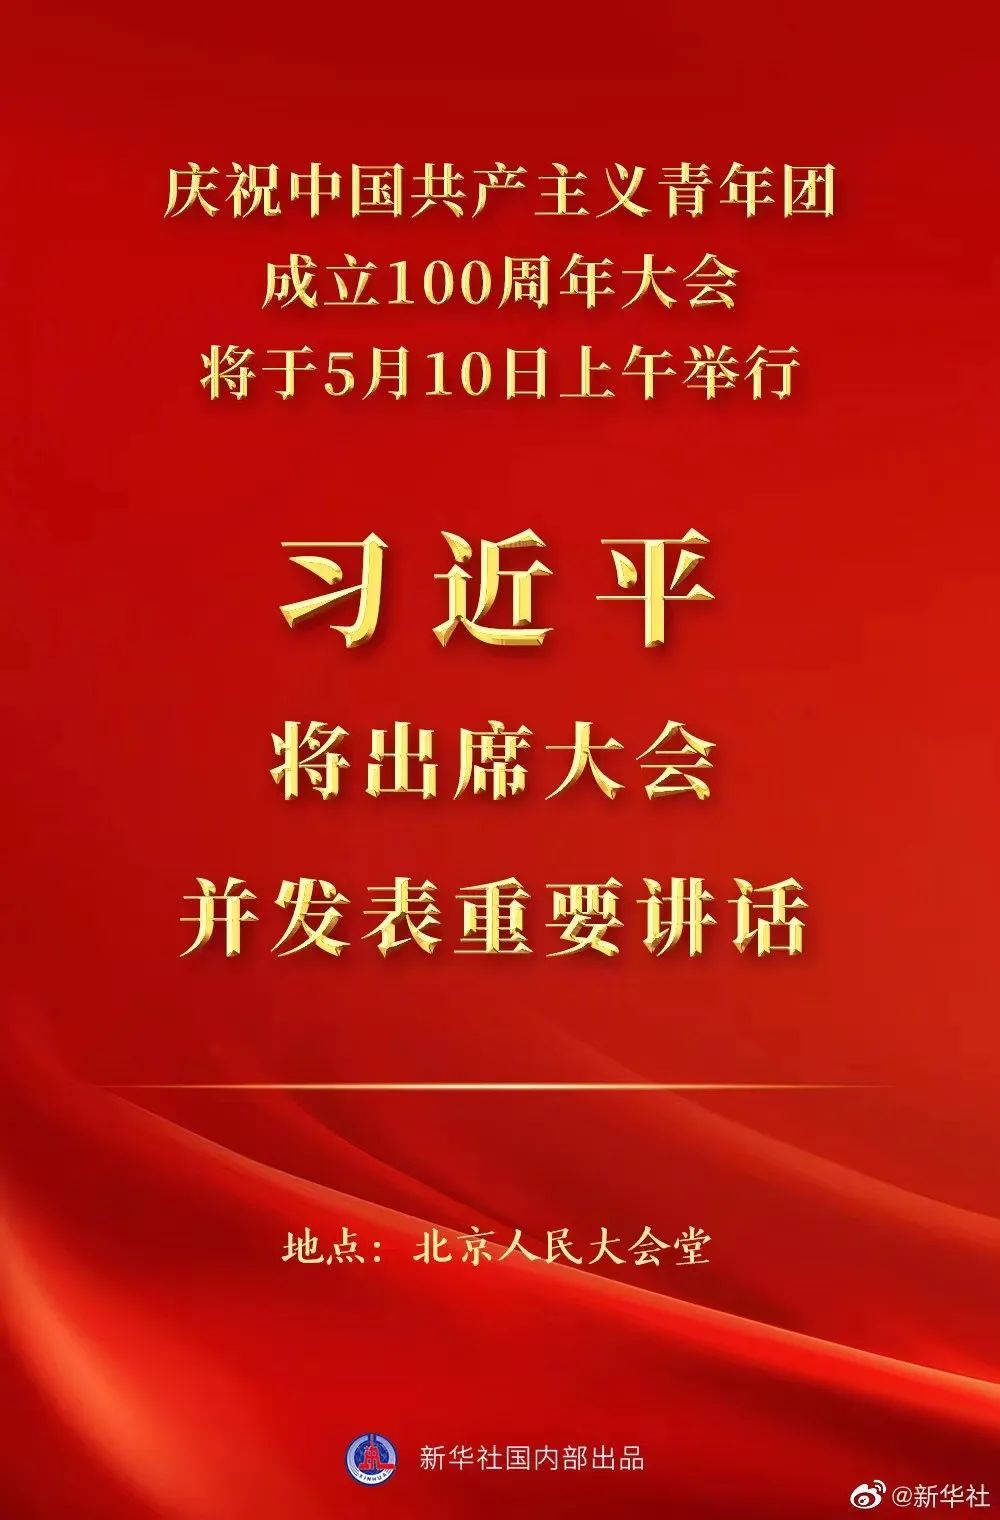 庆祝中国共产主义青年团成立100周年大会10日上午隆重举行 